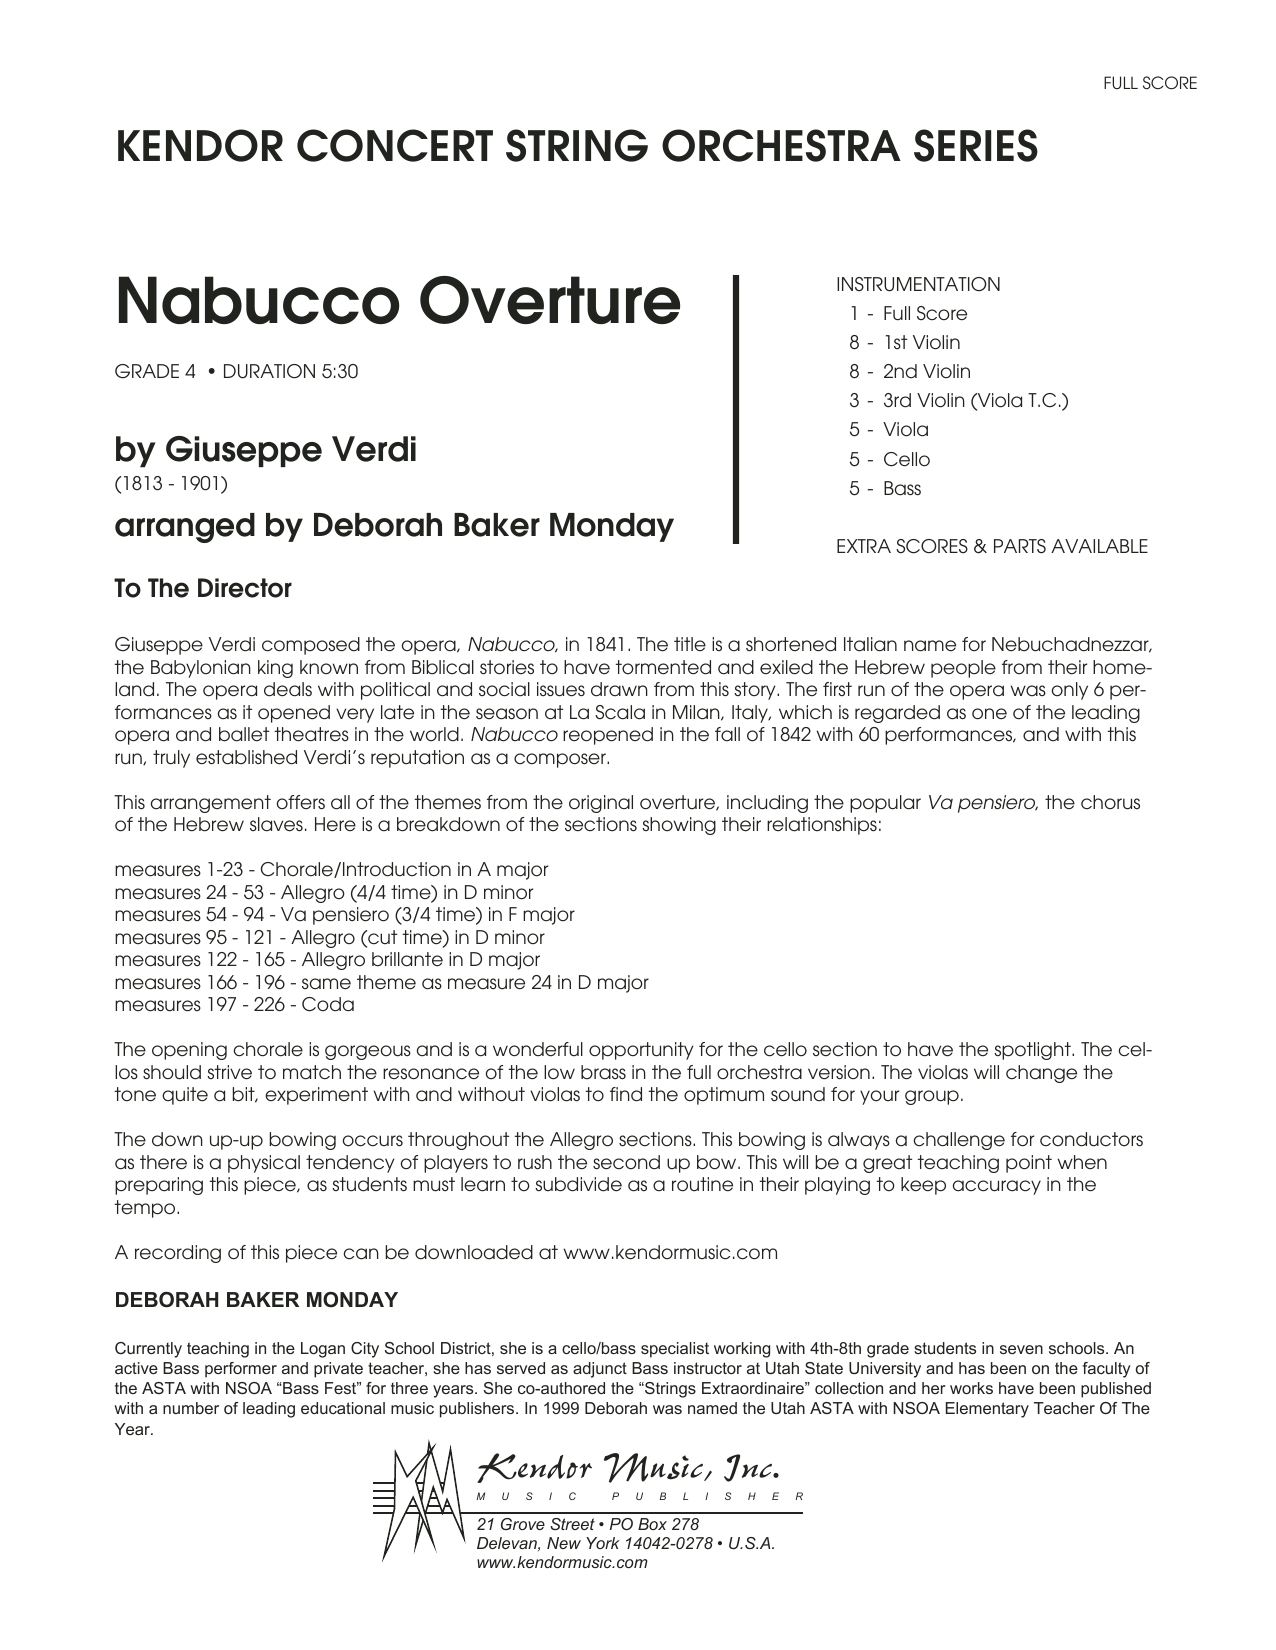 Download Deborah Baker Monday Nabucco Overture - Full Score Sheet Music